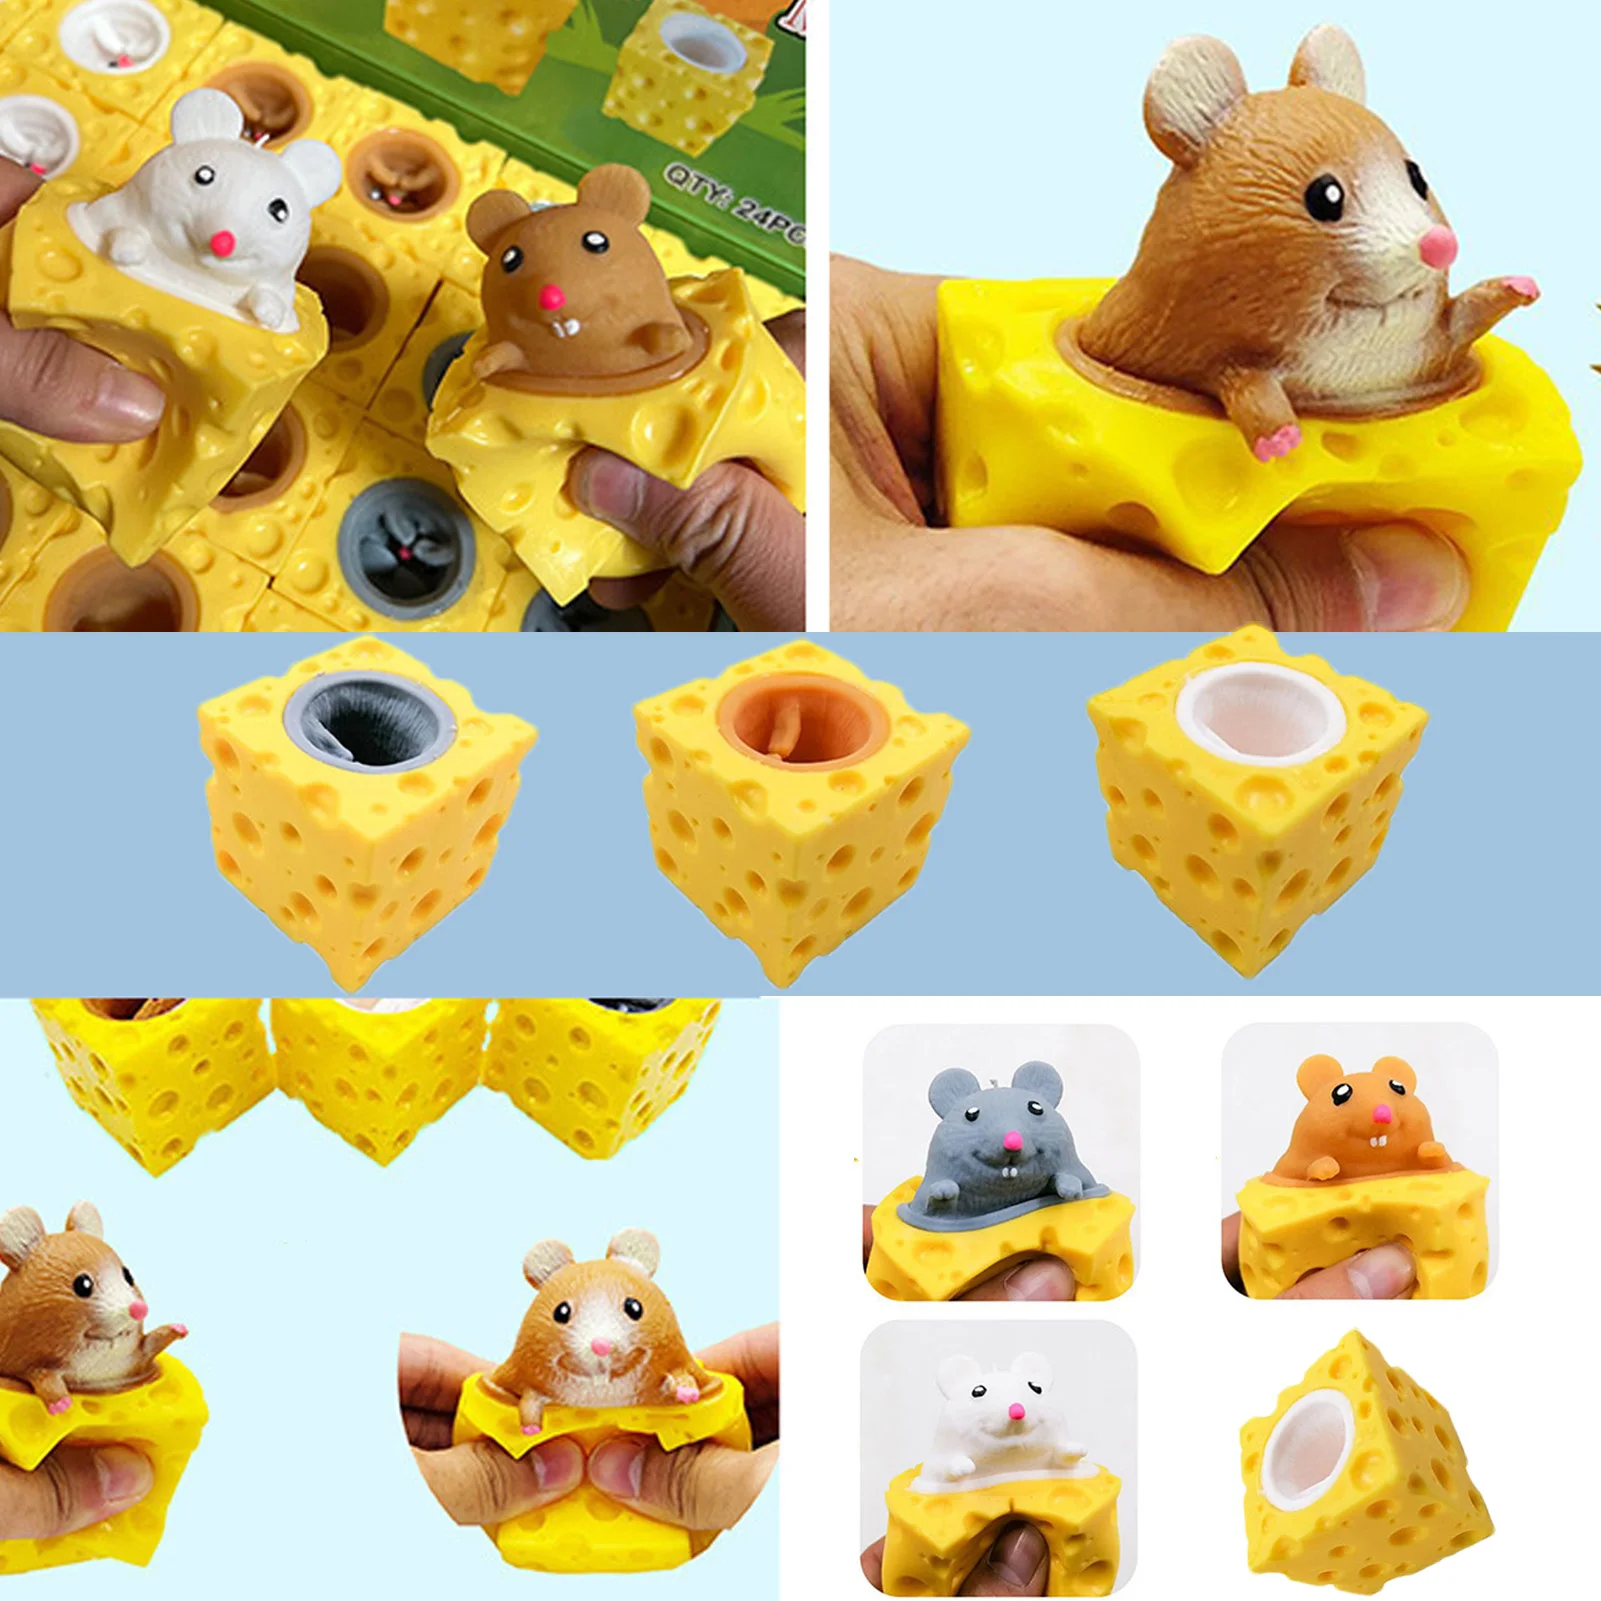 

Игрушка-сжималка для сыра со встроенной крышкой, мышь, забавная сенсорная игрушка для детей и взрослых, легкая в использовании мягкая сжима...